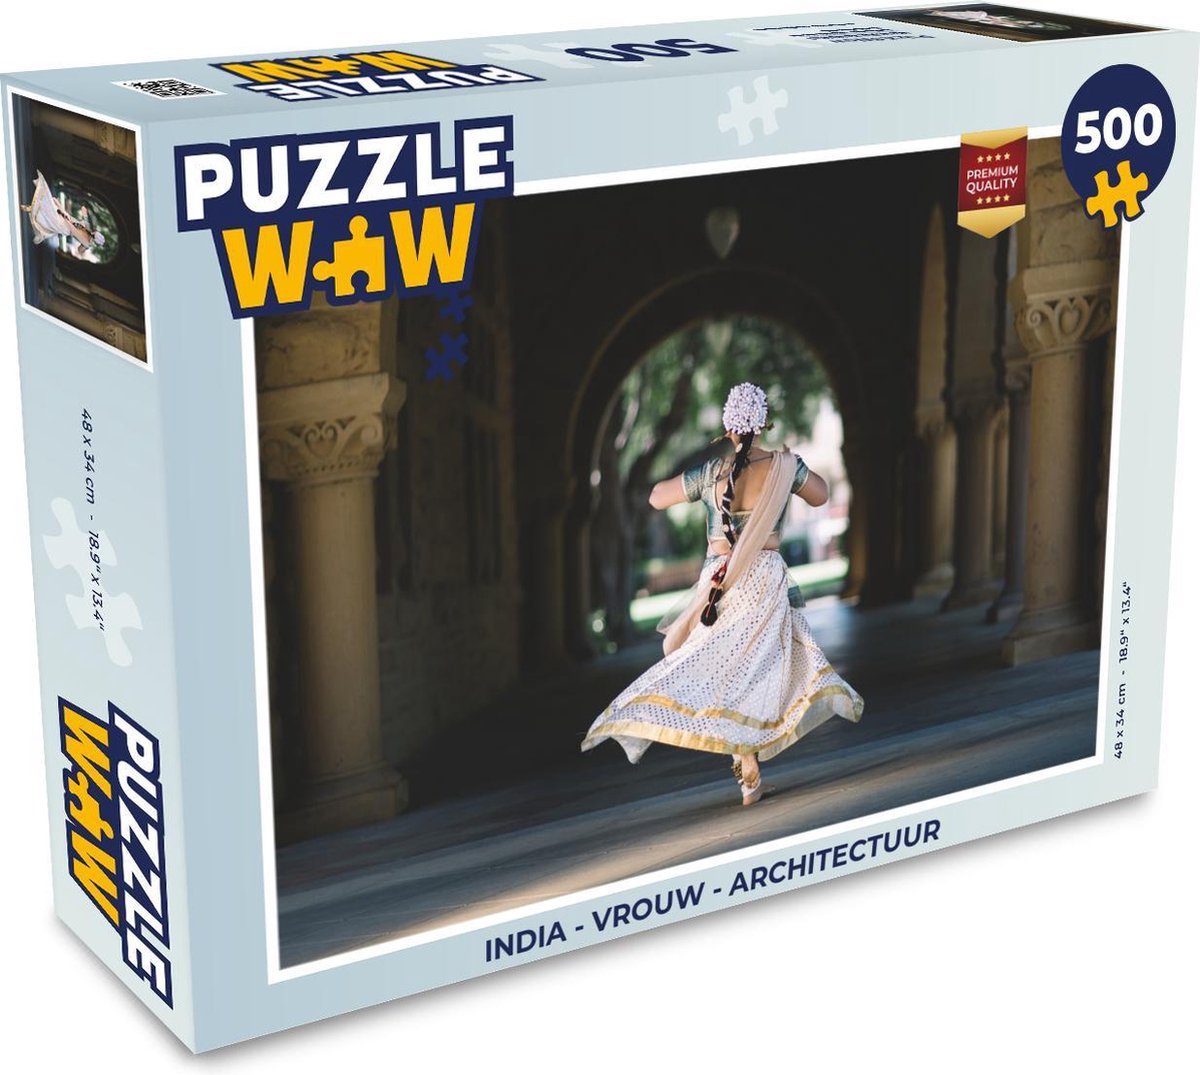 Afbeelding van product PuzzleWow  Puzzel India - Vrouw - Architectuur - Legpuzzel - Puzzel 500 stukjes